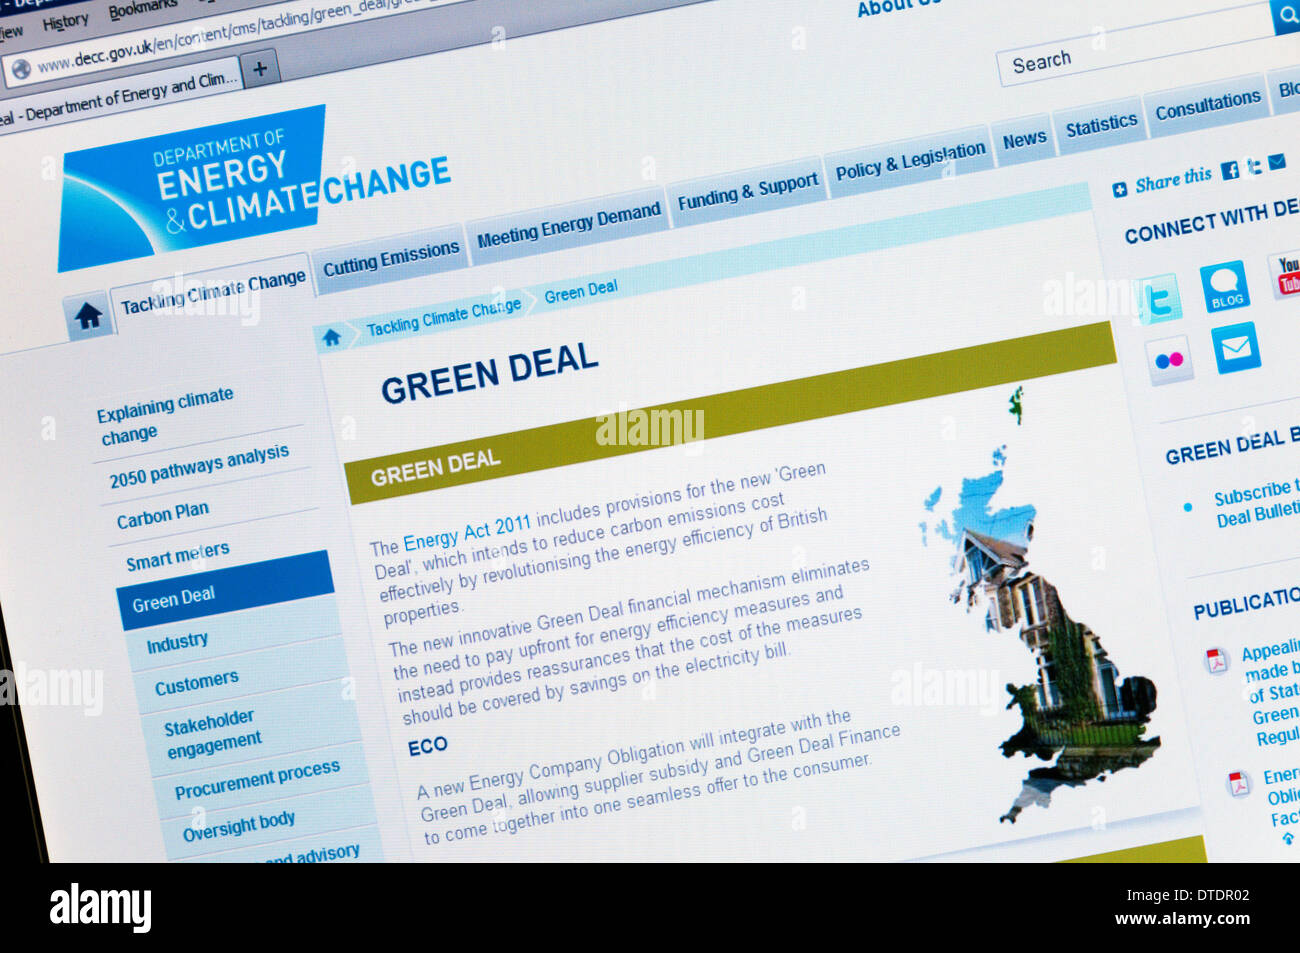 Il sito web del Dipartimento britannico di energia e cambiamento climatico che mostra i dettagli del governo's Green Deal. Foto Stock